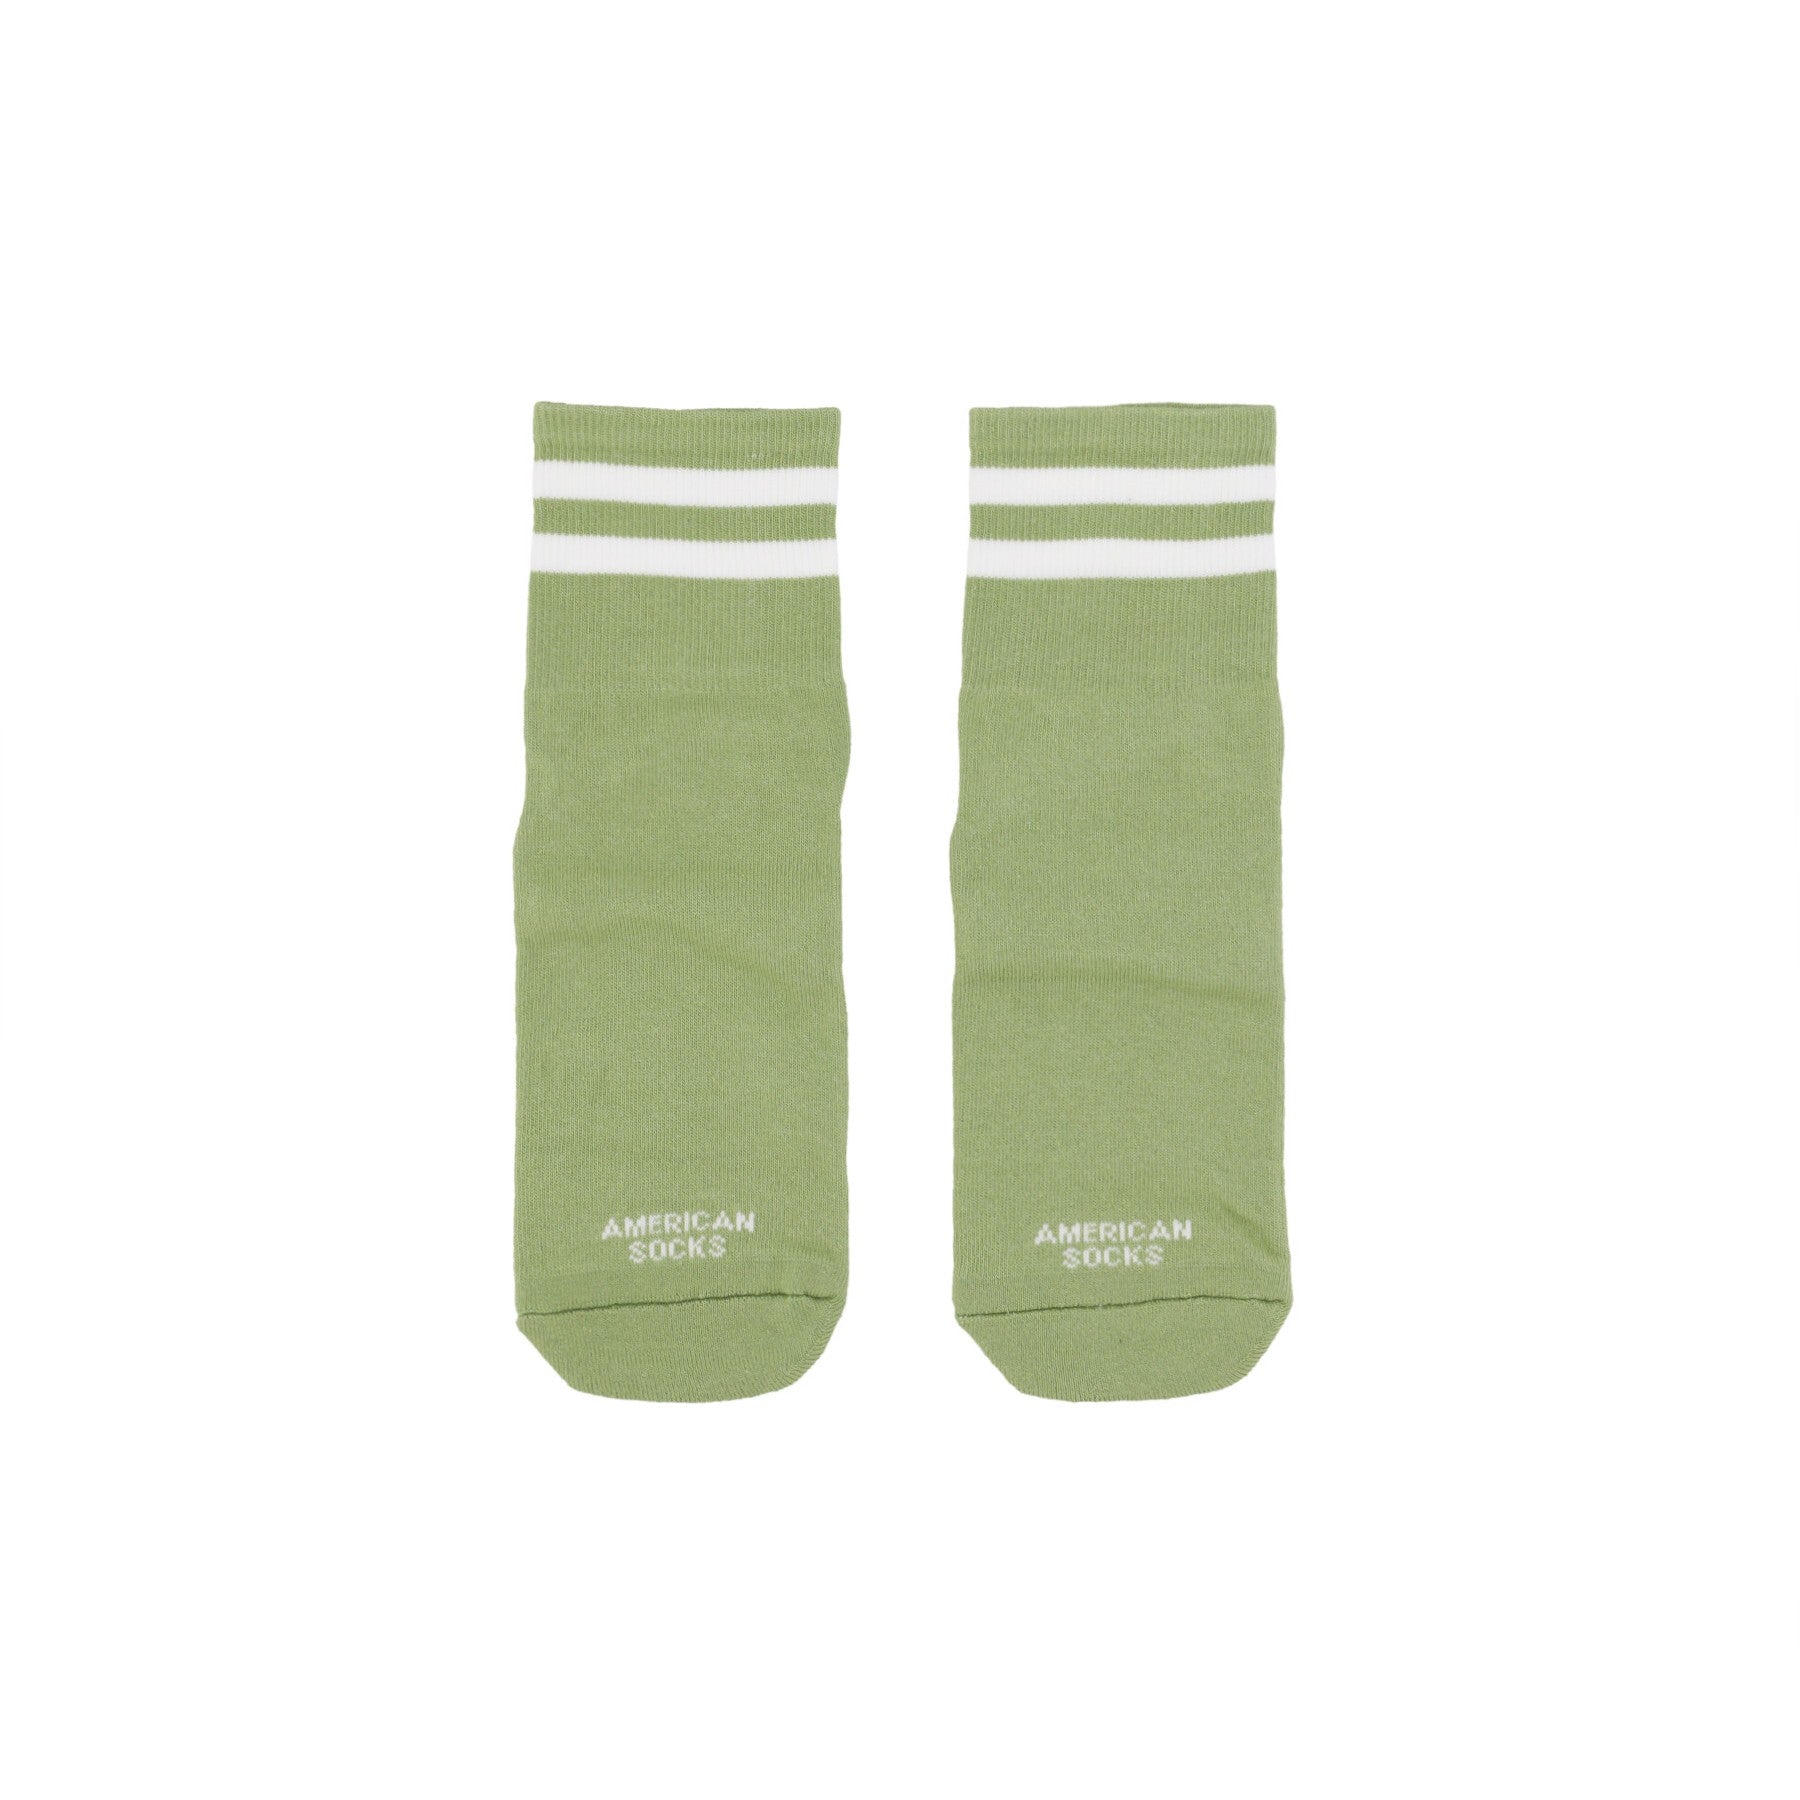 American Socks, Calza Media Uomo Ankle High Grogu, Bottle Green